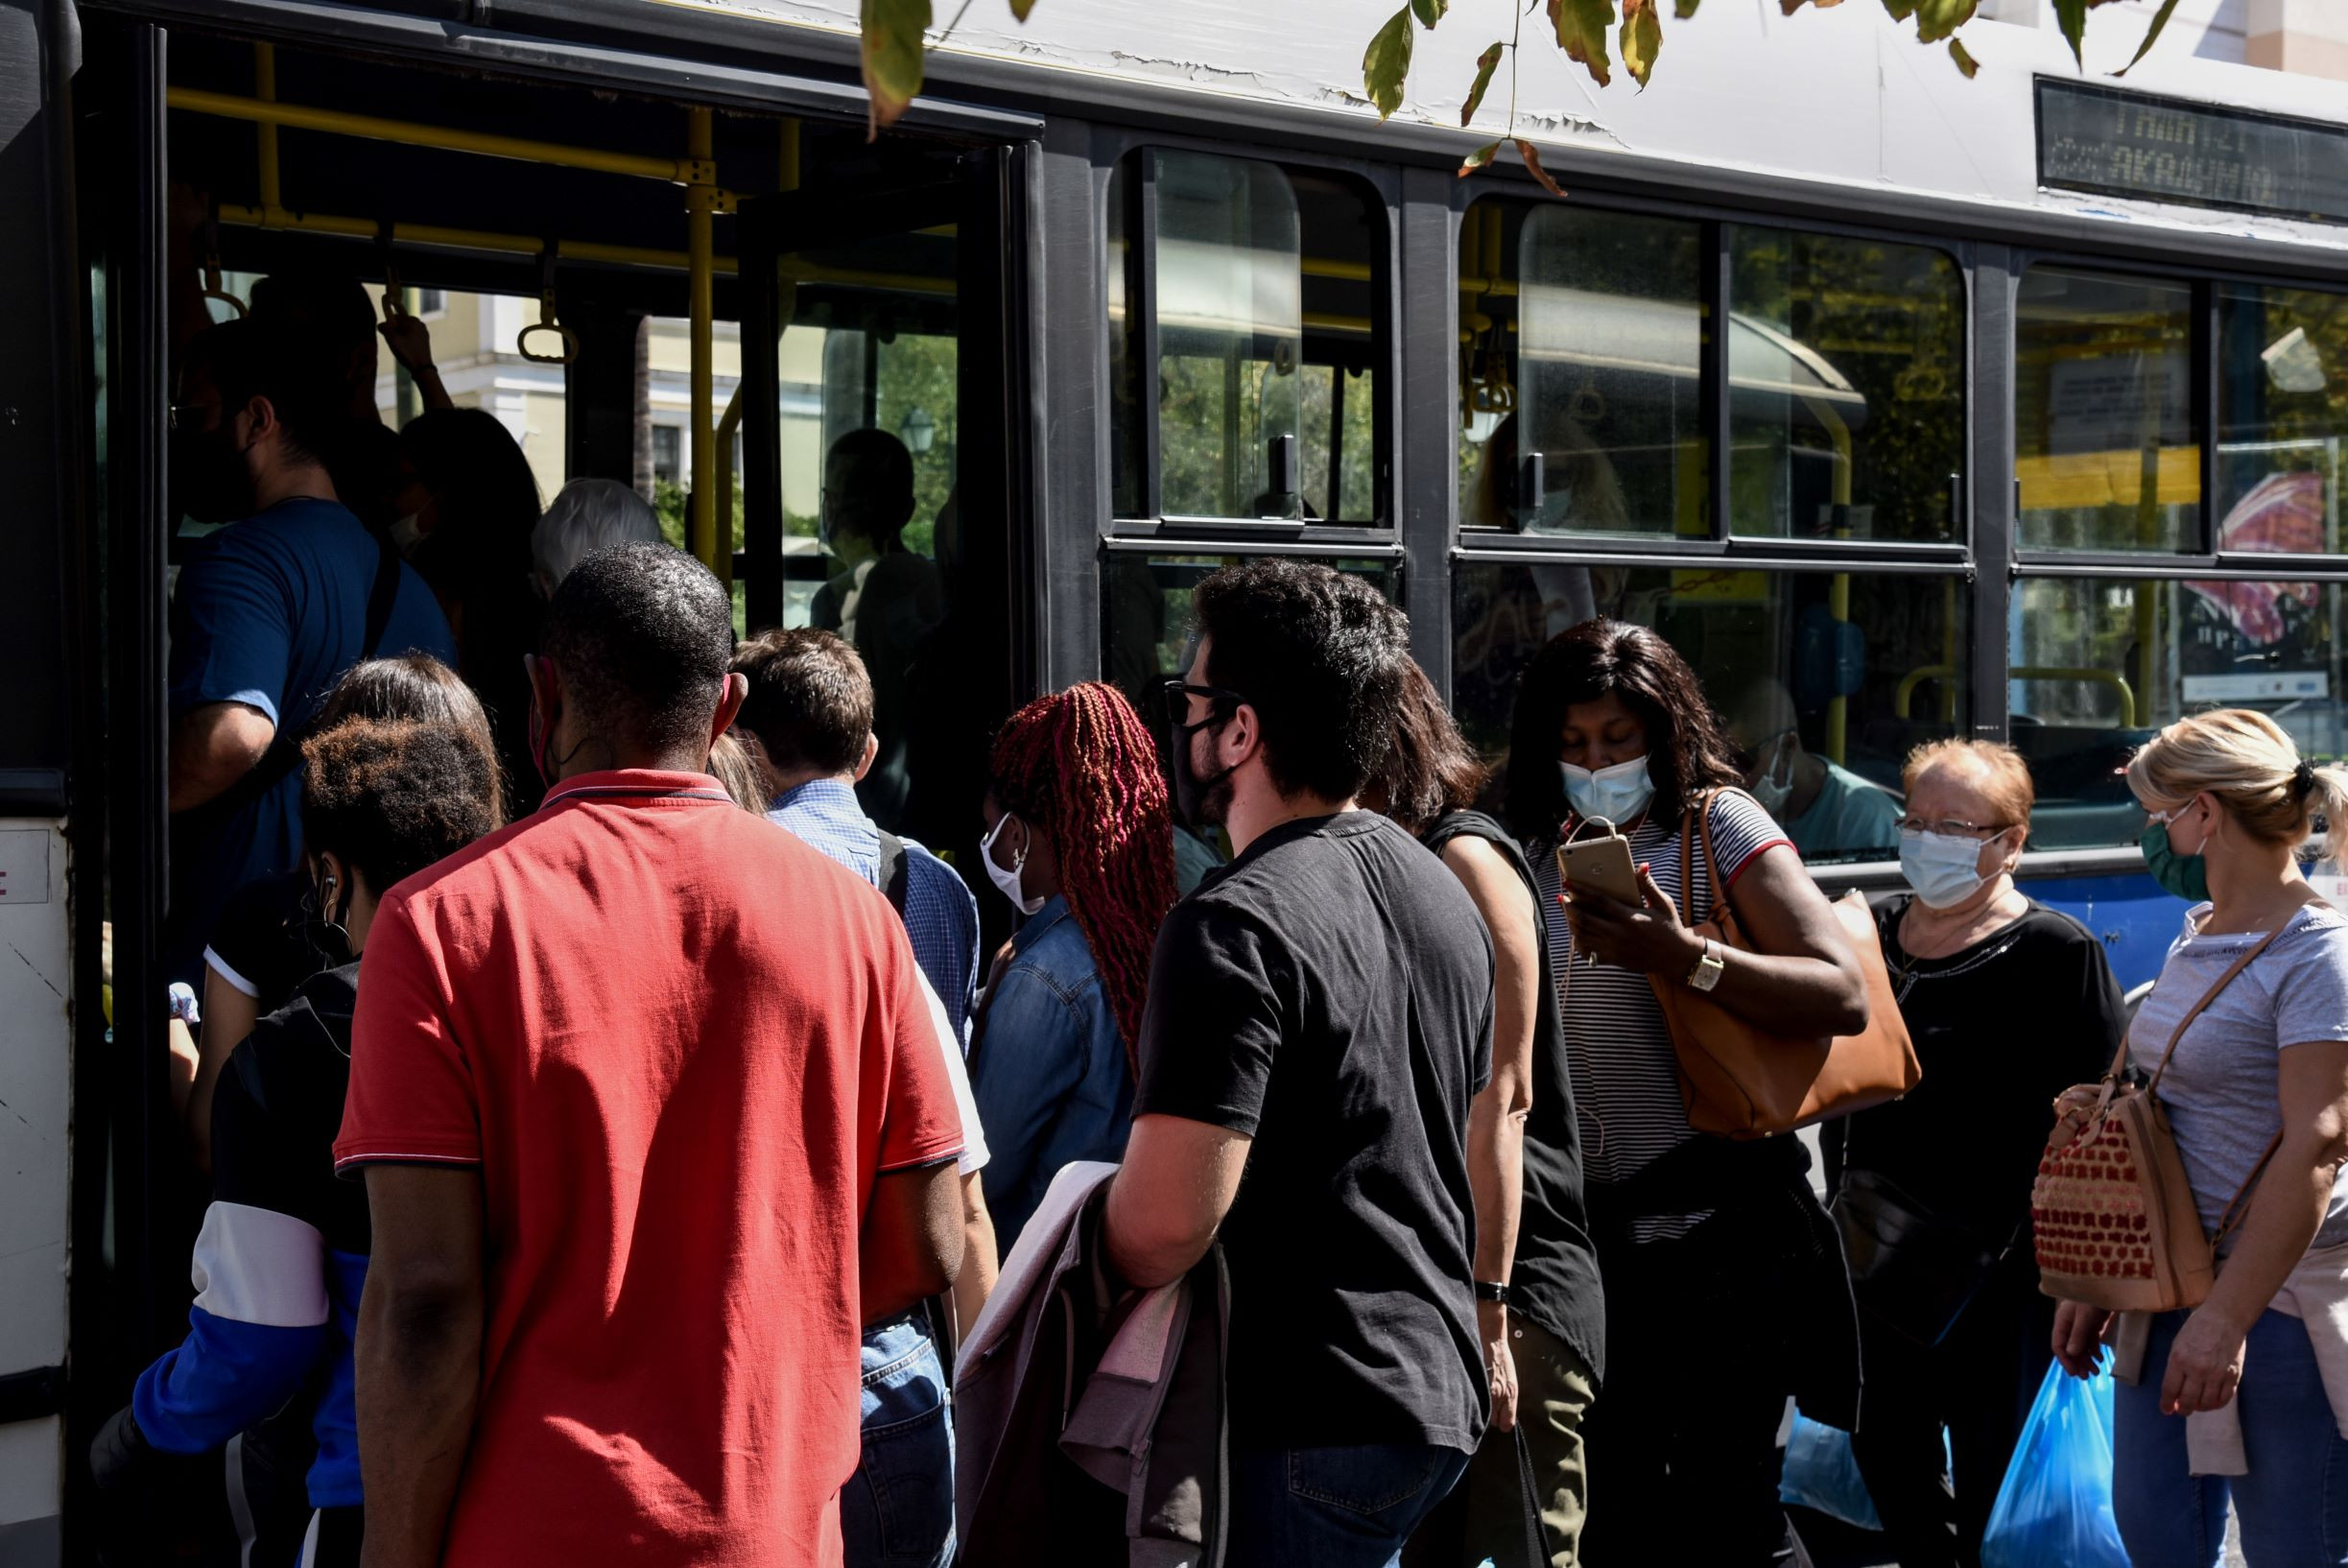 Εκατοντάδες λεωφορεία και τρόλεϊ «κάθονται» στα αμαξοστάσια – Με μικροεπισκευές και οδηγούς μπορούν να βγουν άμεσα στον δρόμο